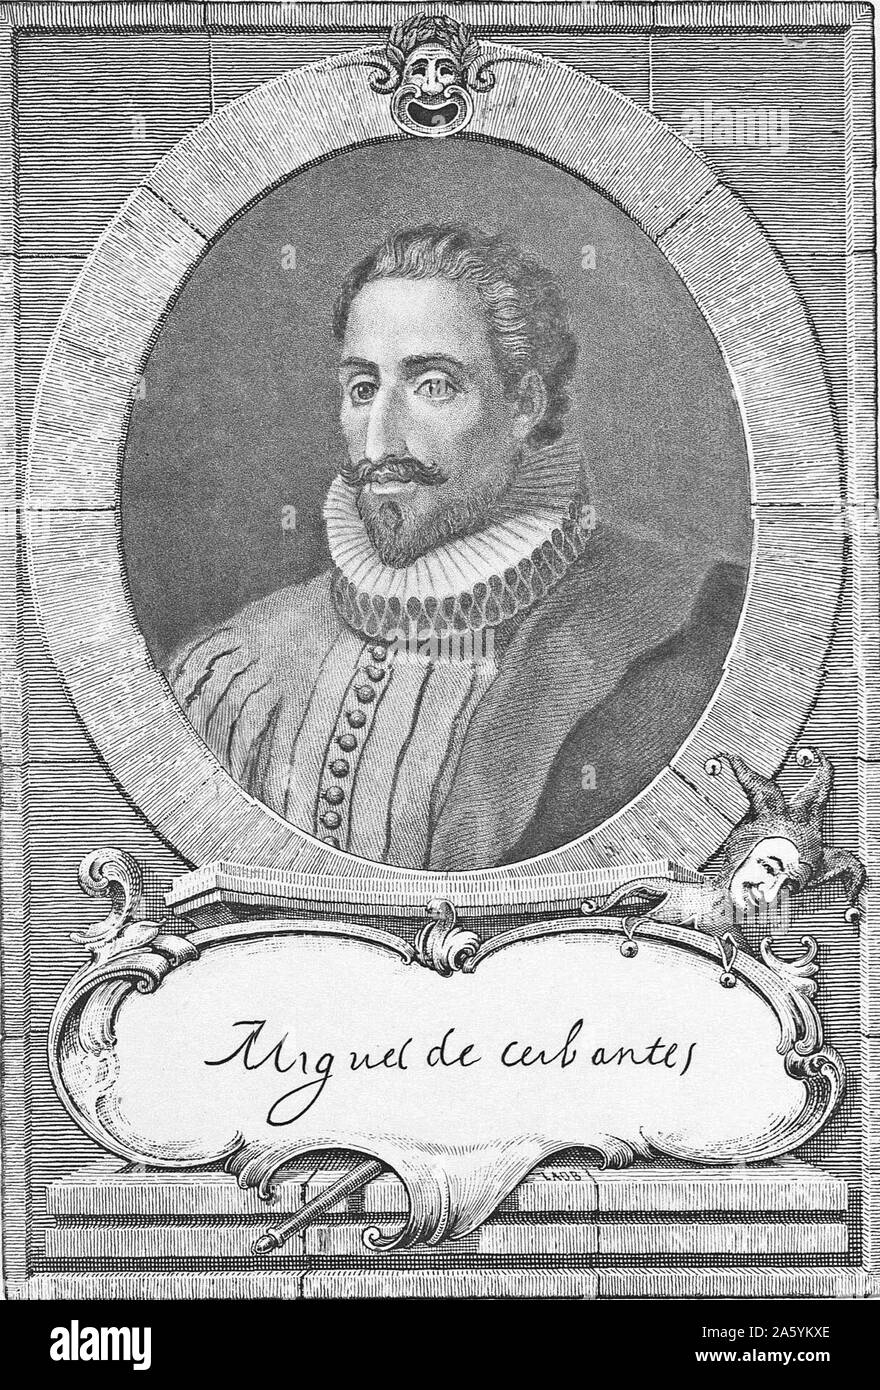 Miguel de Cervantes, spanischer Schriftsteller, Dichter und Dramatiker. Sein opus magnum Don Quixote ist der erste moderne Roman angesehen. 19. jahrhundert Gravur Stockfoto